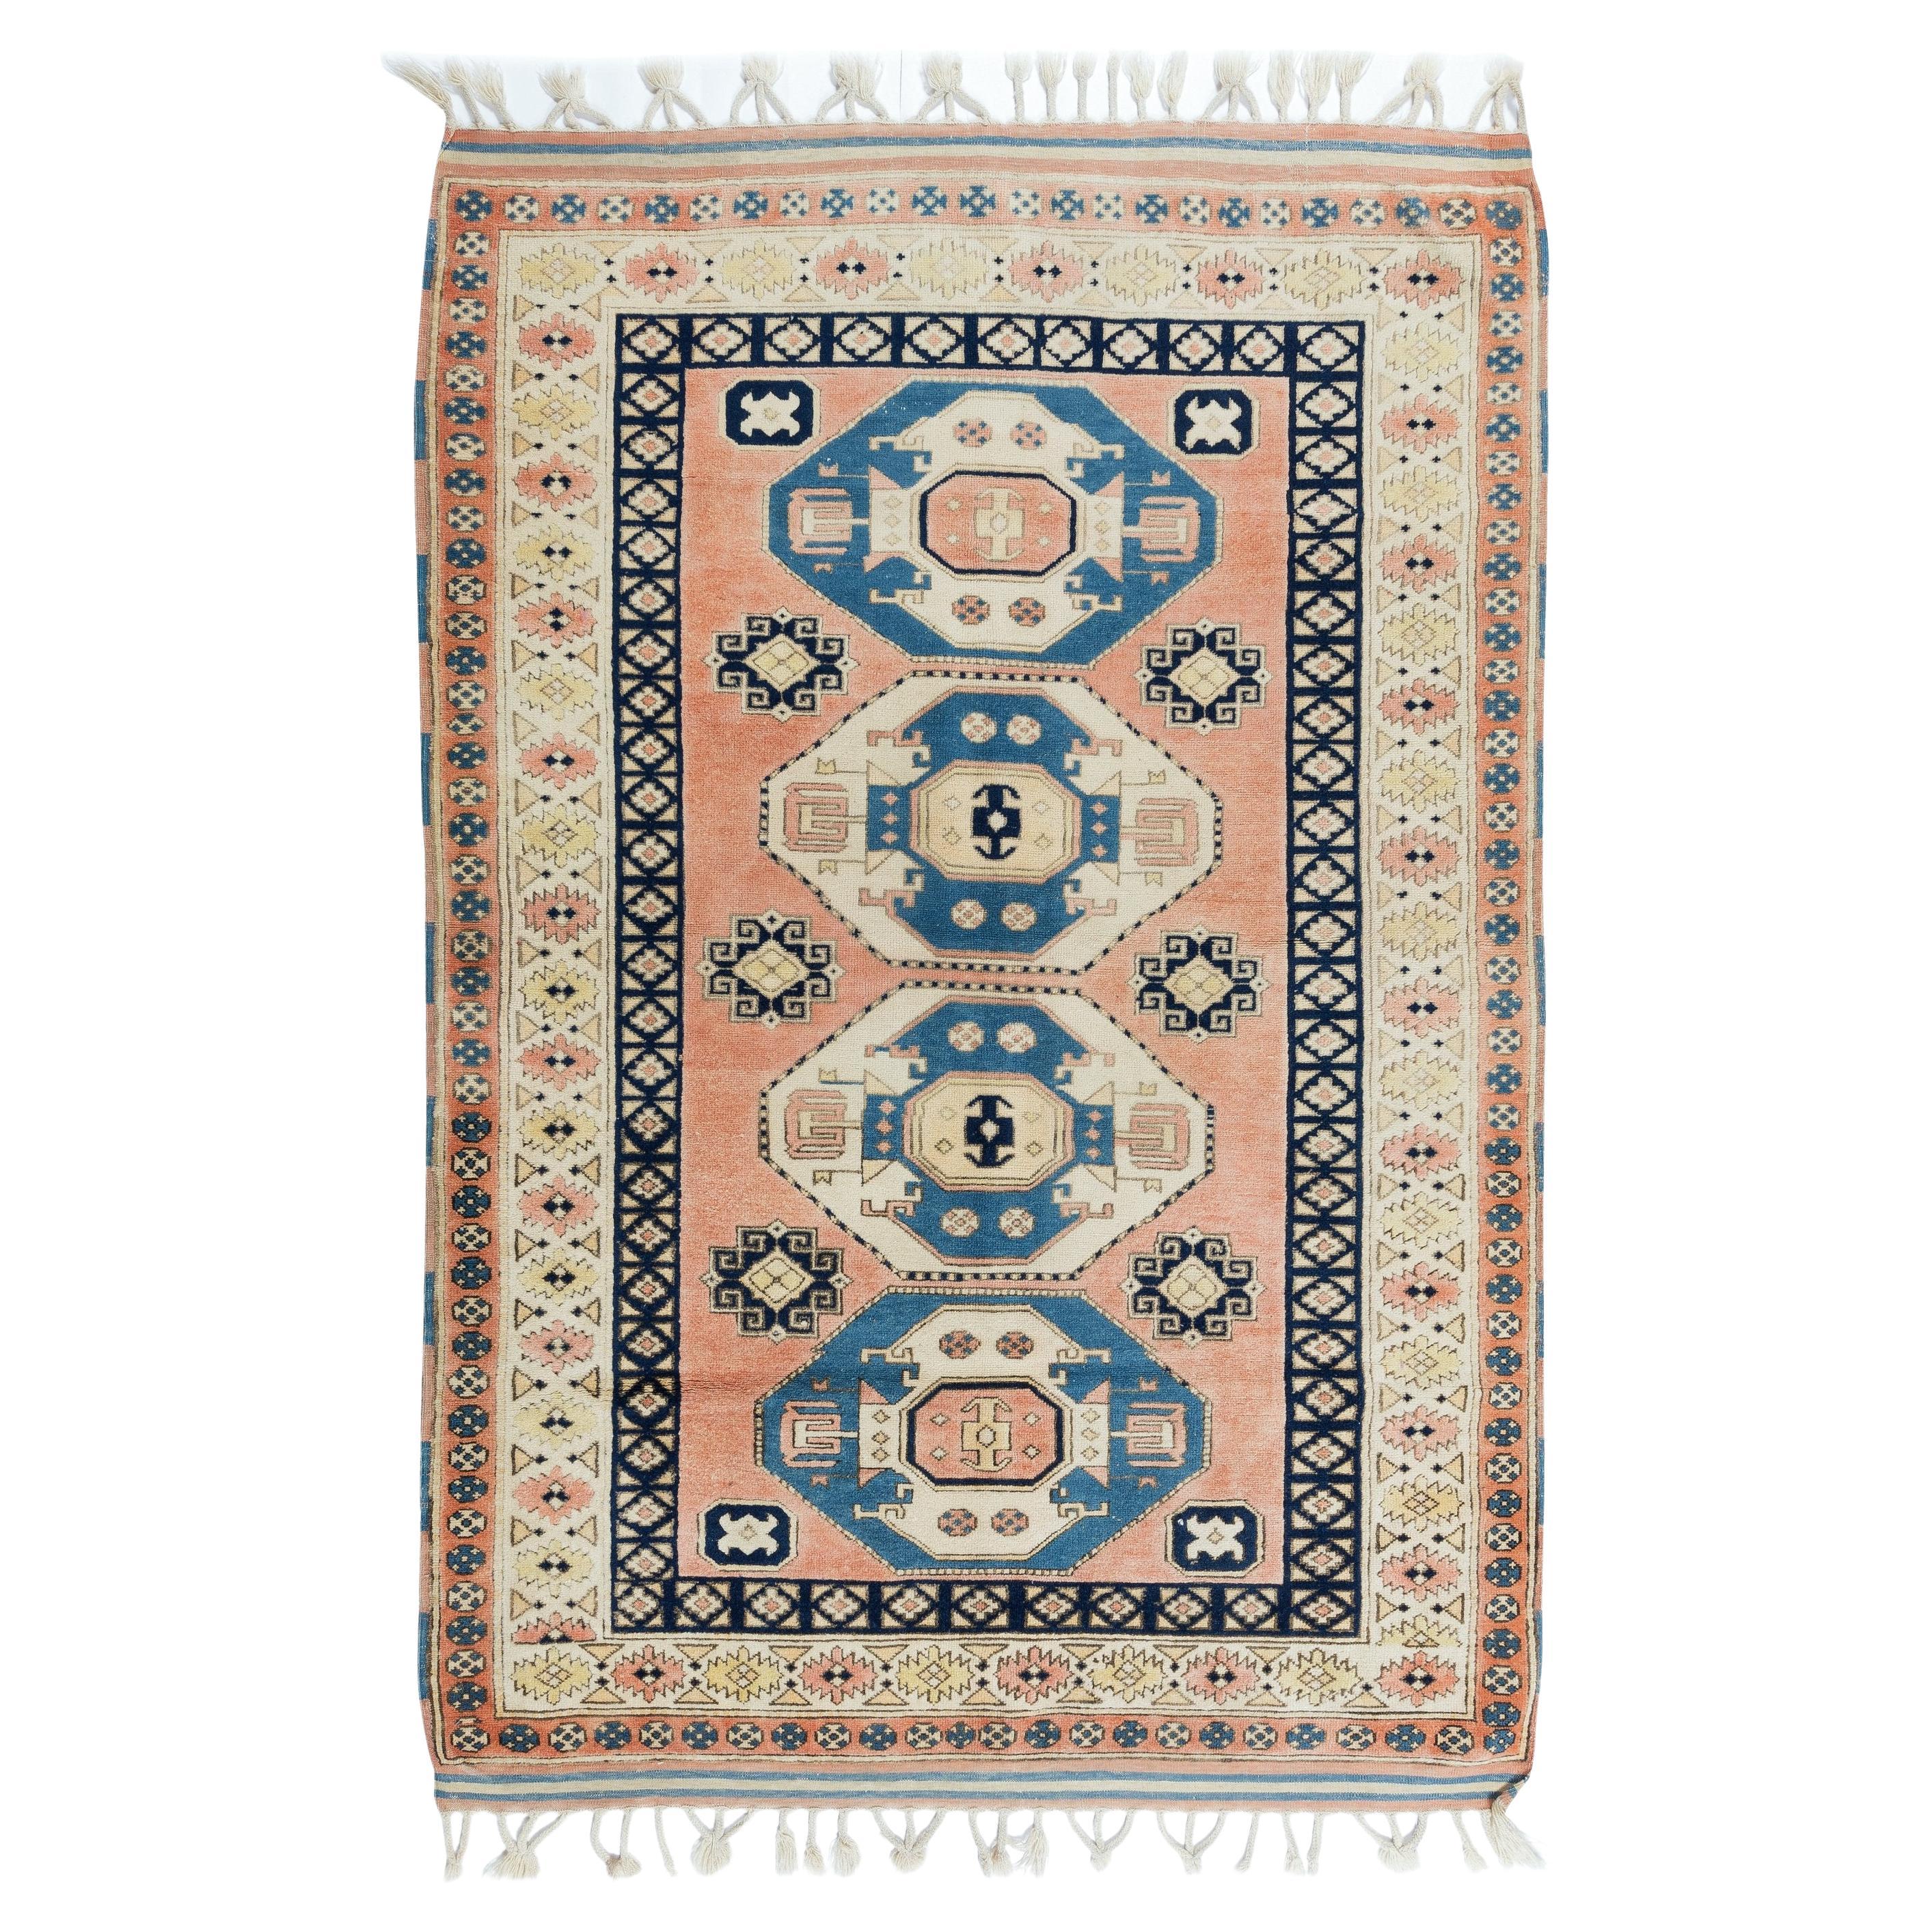 4.2x6 Ft Vintage Handgefertigter türkischer Teppich, Unikat mit geometrischem Muster